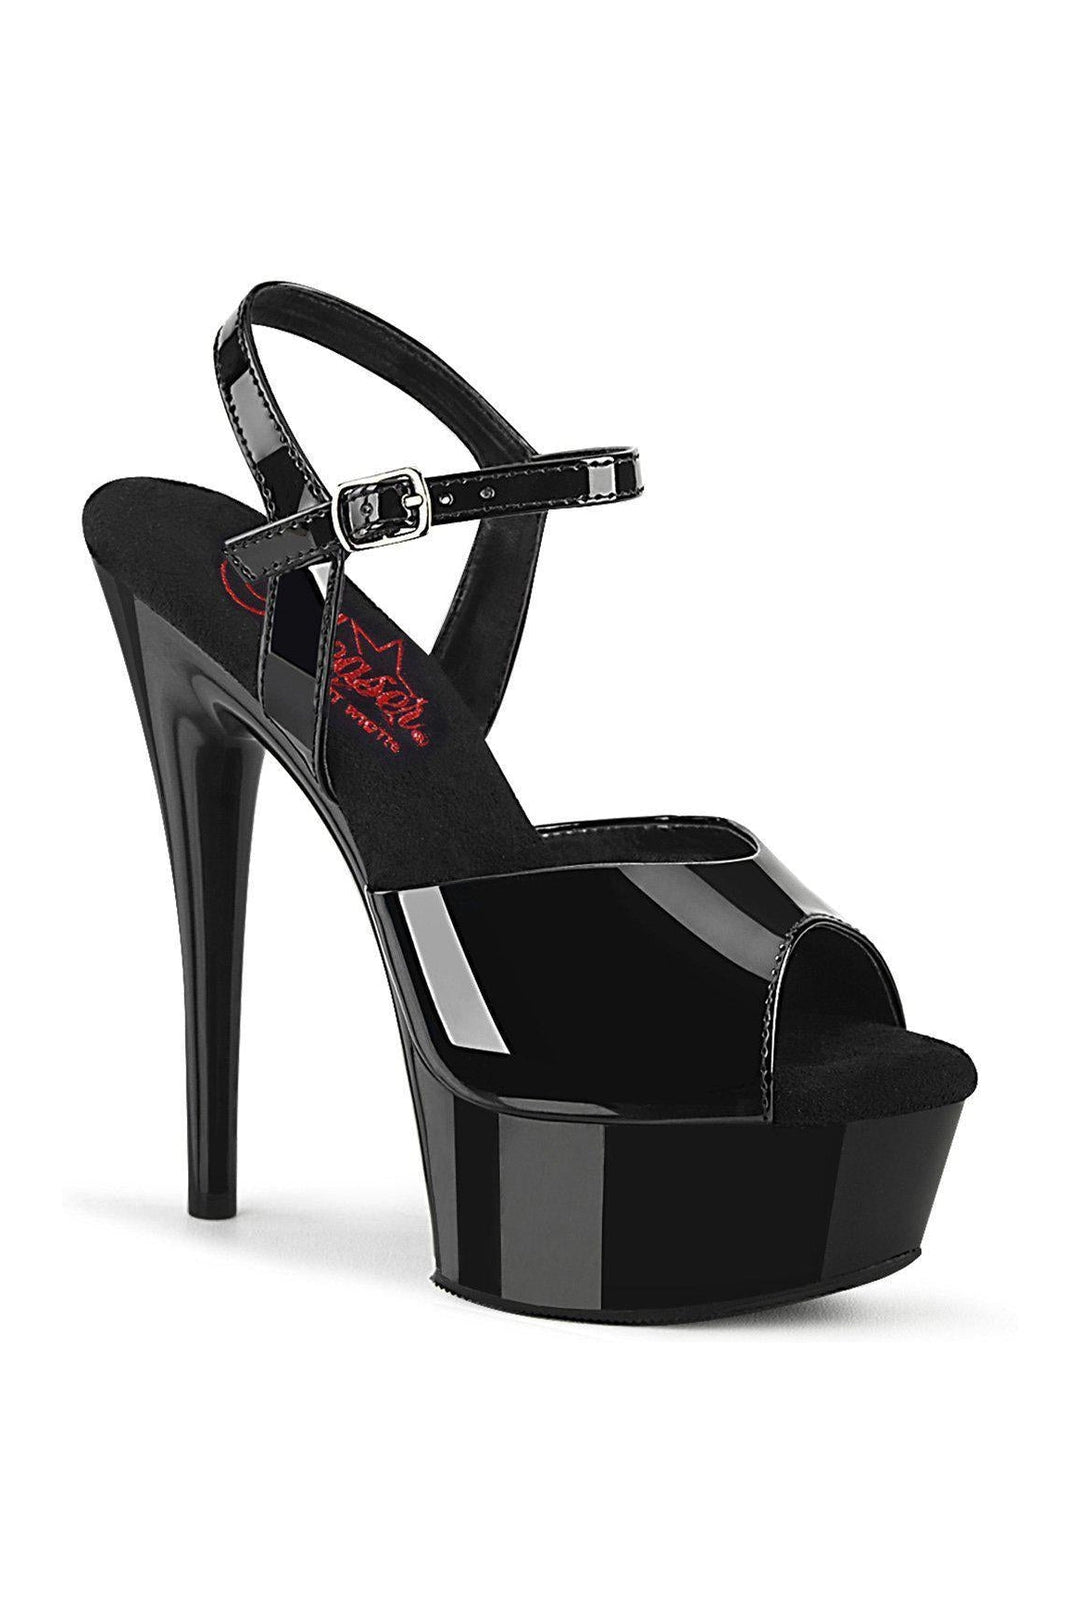 EXCITE-609 Sandal | Black Patent-Sandals-Pleaser-Black-11-Patent-SEXYSHOES.COM